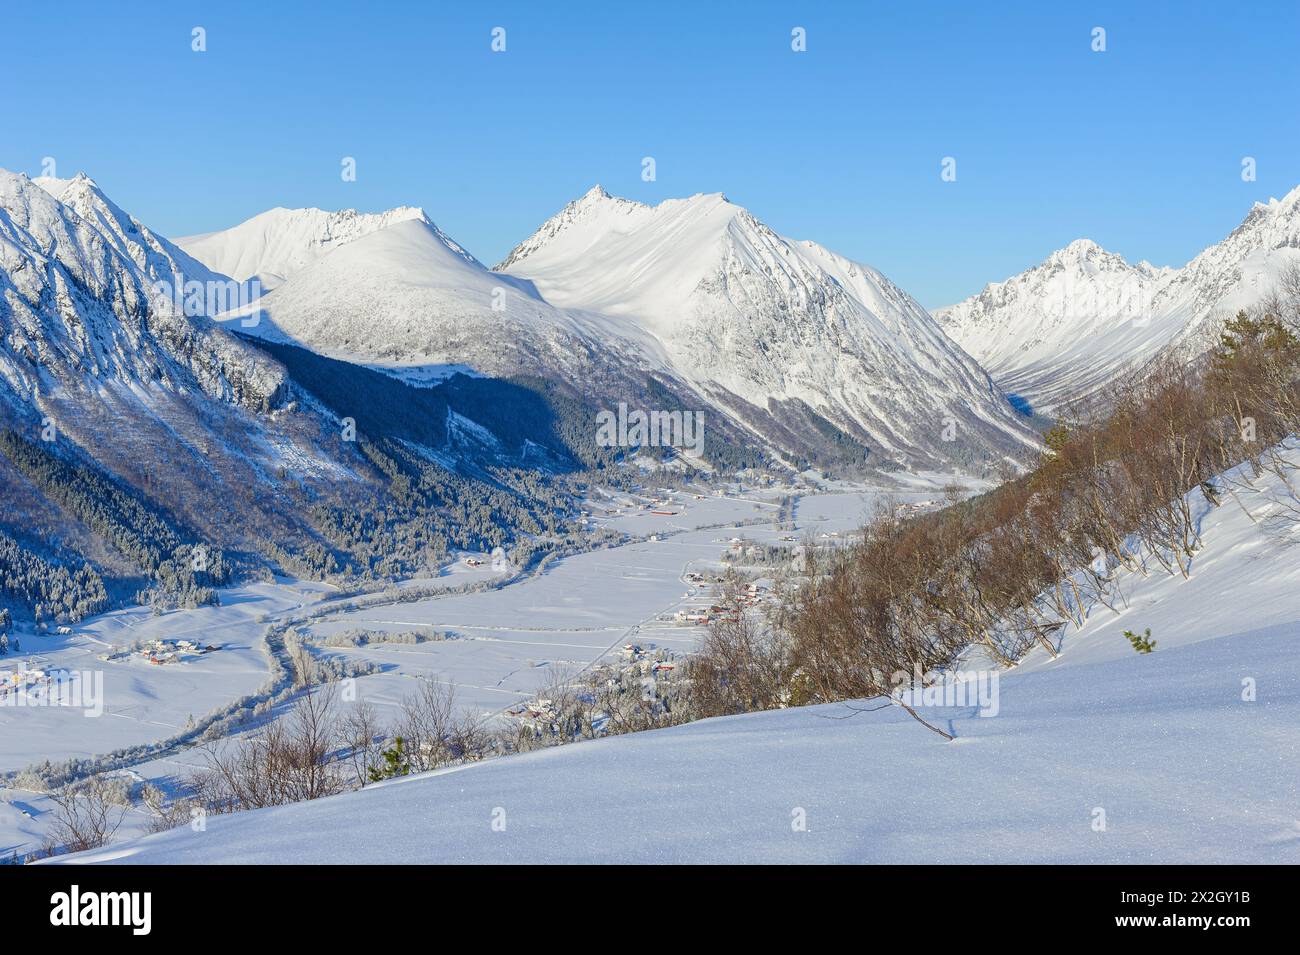 Ein malerischer Blick auf ein Dorf in einem Tal mit schneebedeckten Bergen unter einem klaren blauen Himmel. Stockfoto